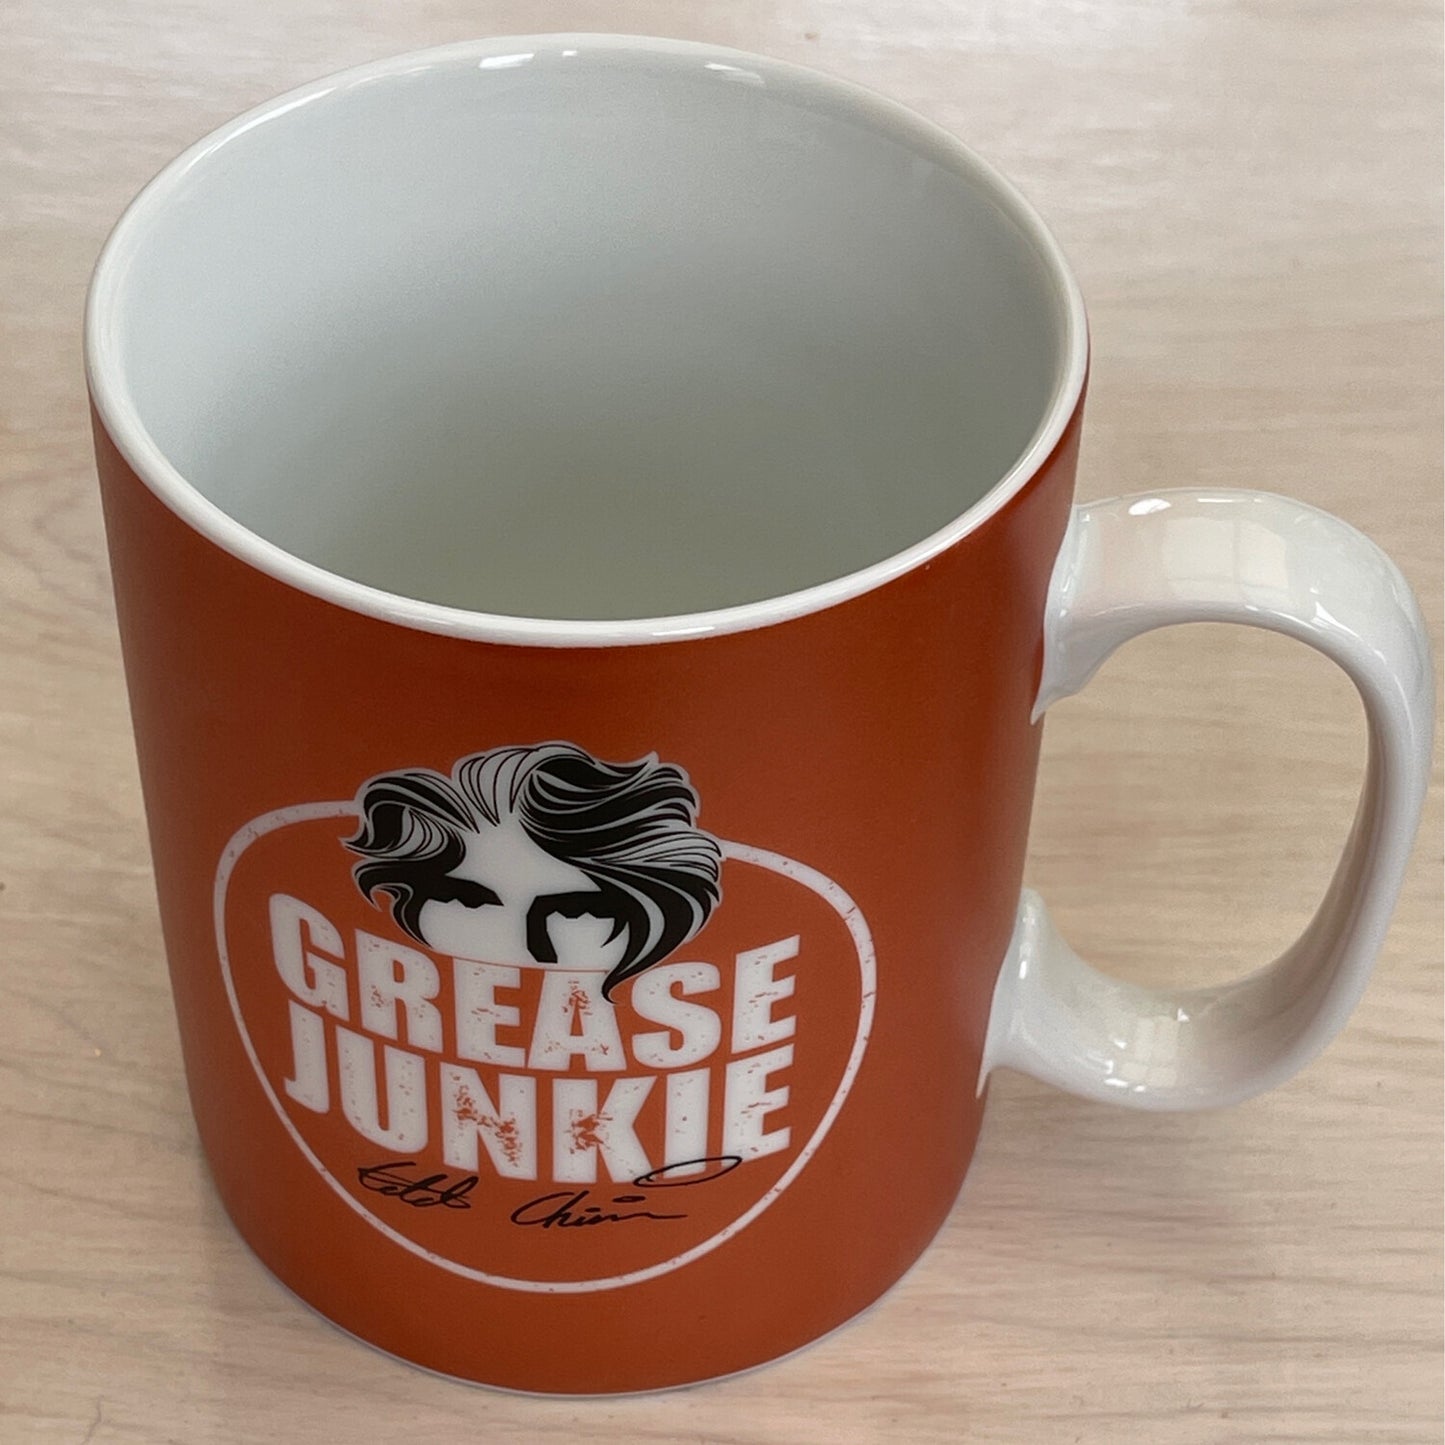 "Grease Junkie Orange", Big Mug, 460ml, Porcelain